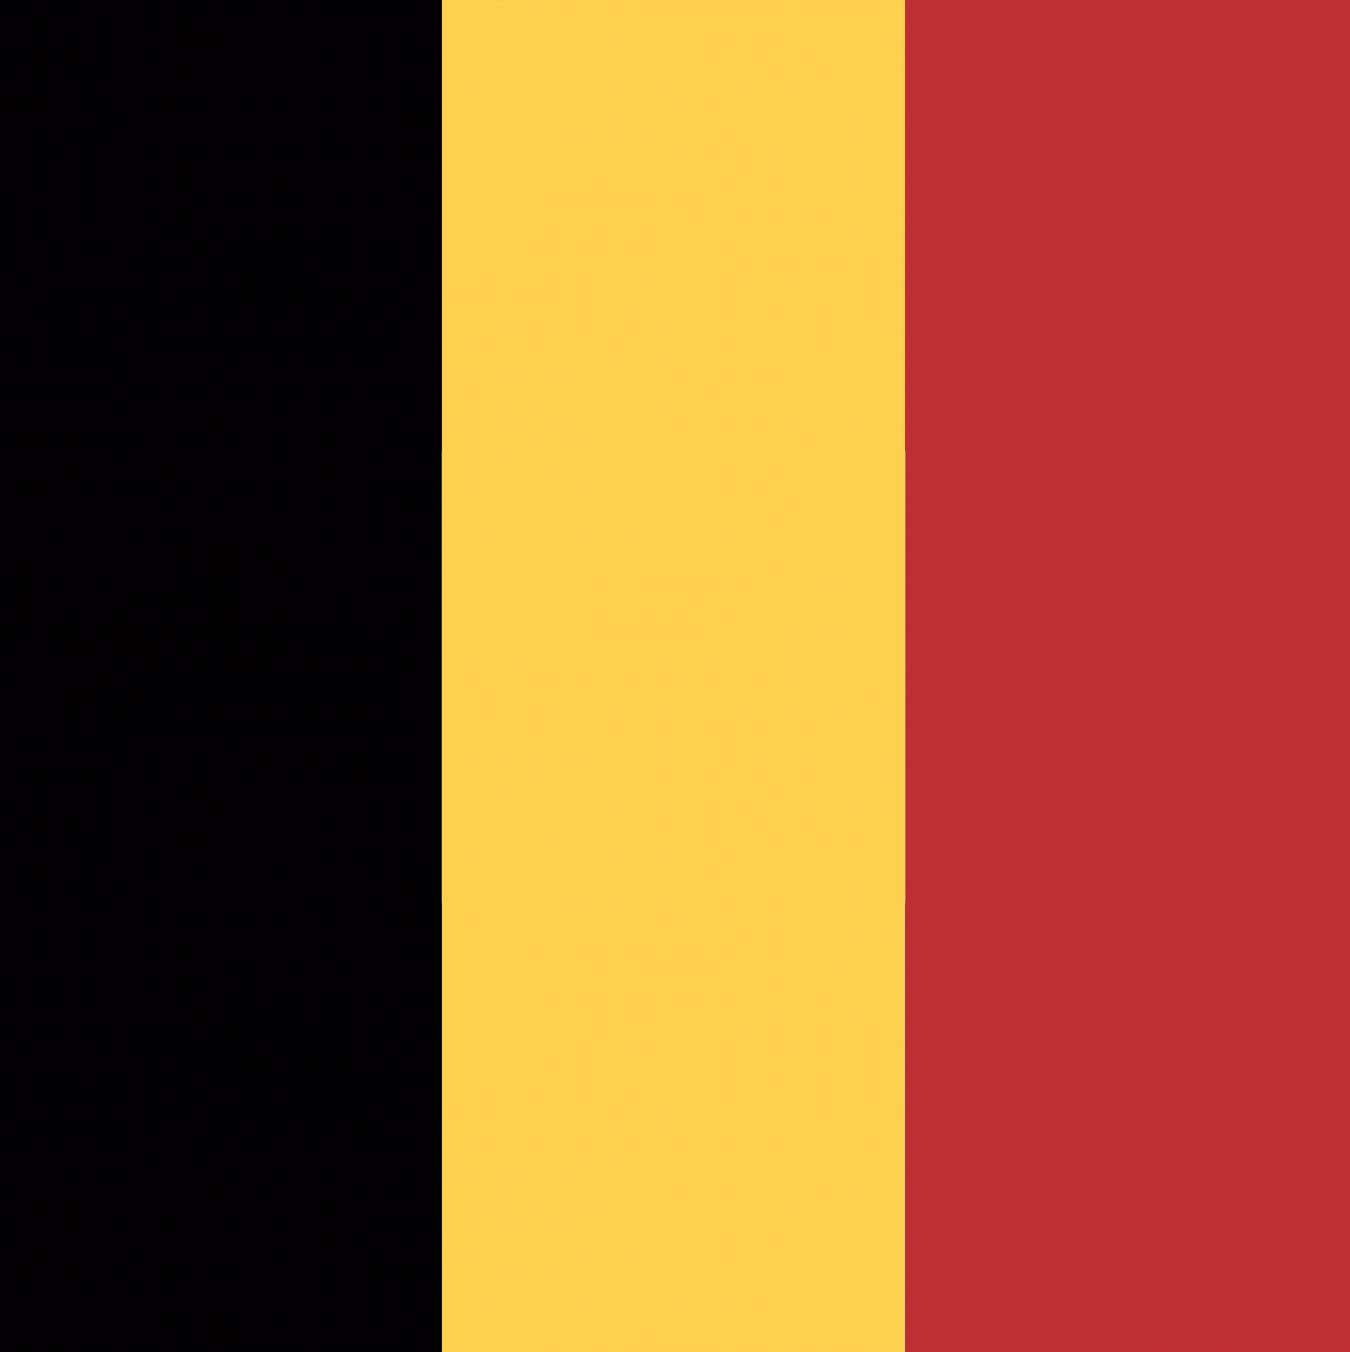 Belgian LPs